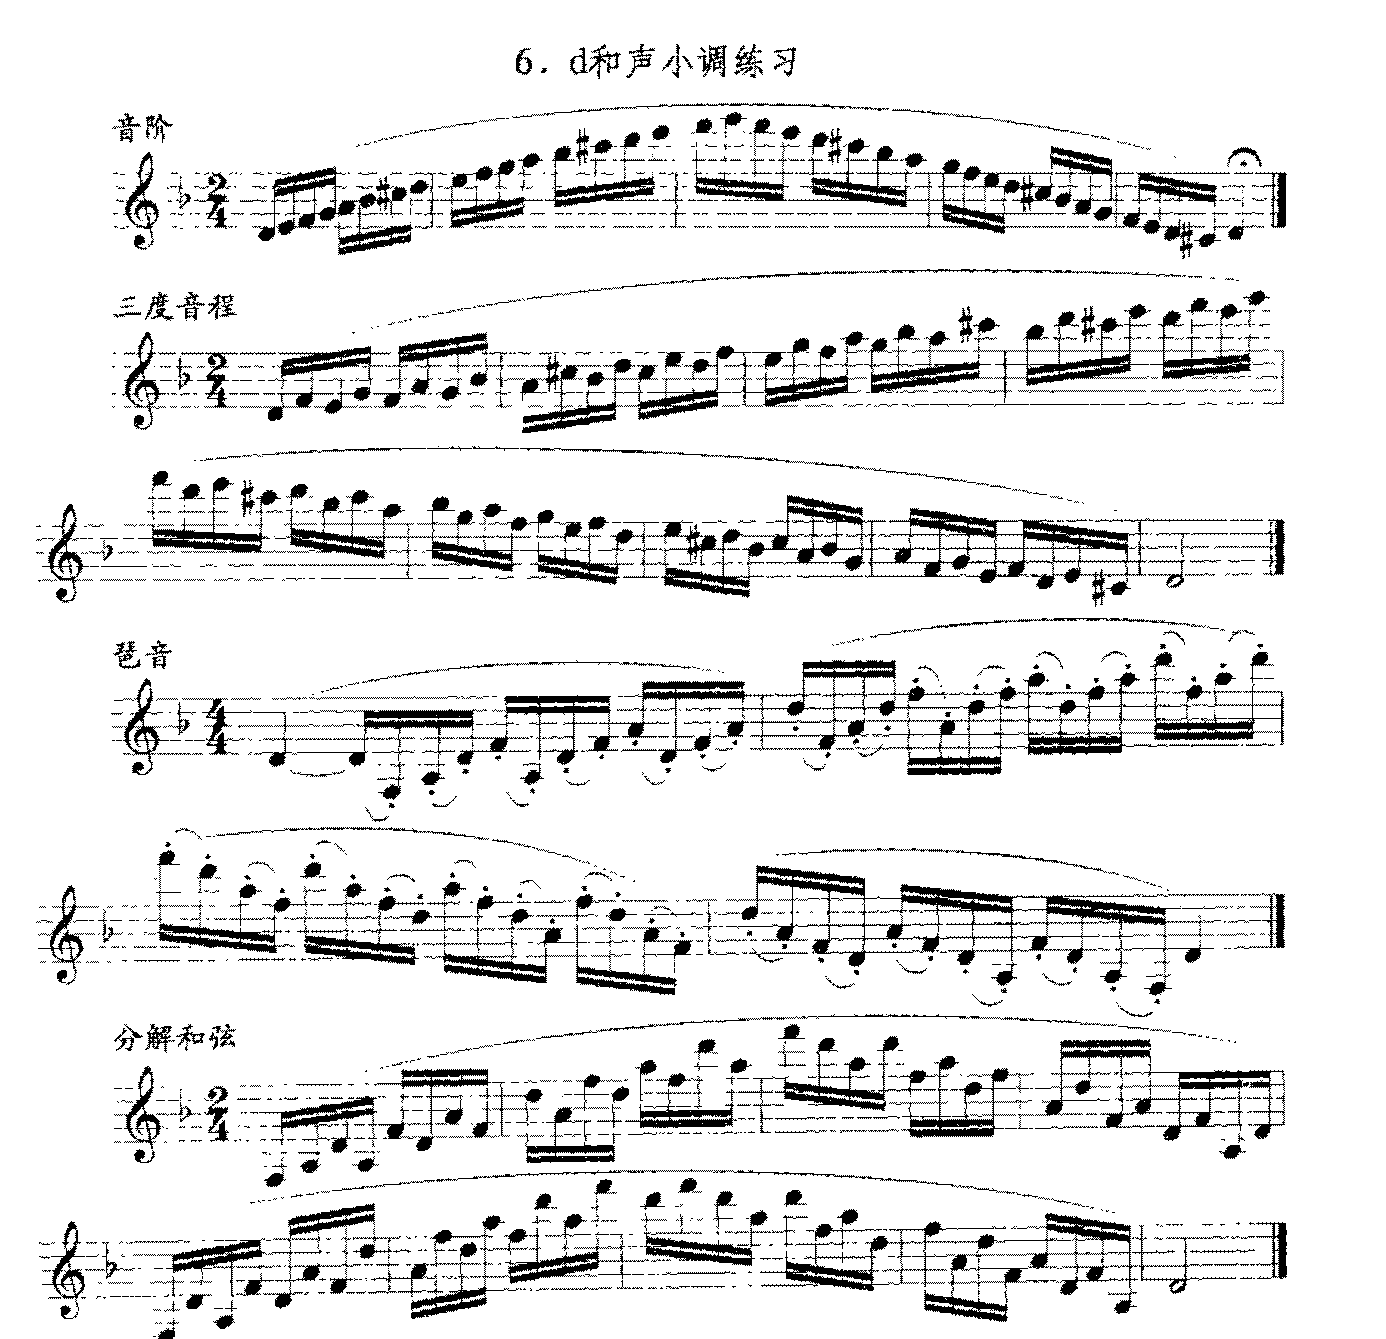 单簧管日常基础技术练习曲《d和声小调练习》